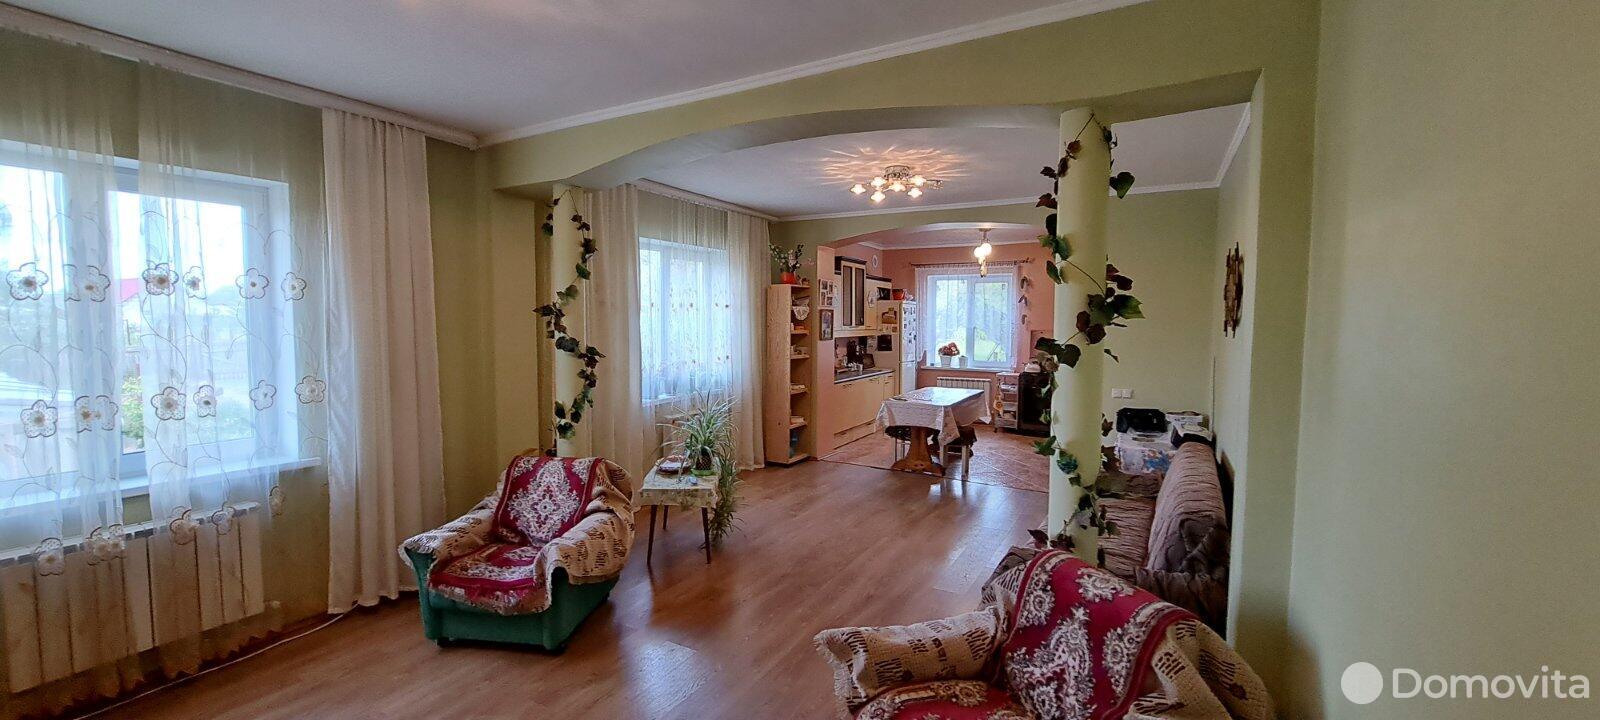 Продажа 2-этажного дома в Зазерке, Минская область ул. Новая, 99800USD, код 636202 - фото 1